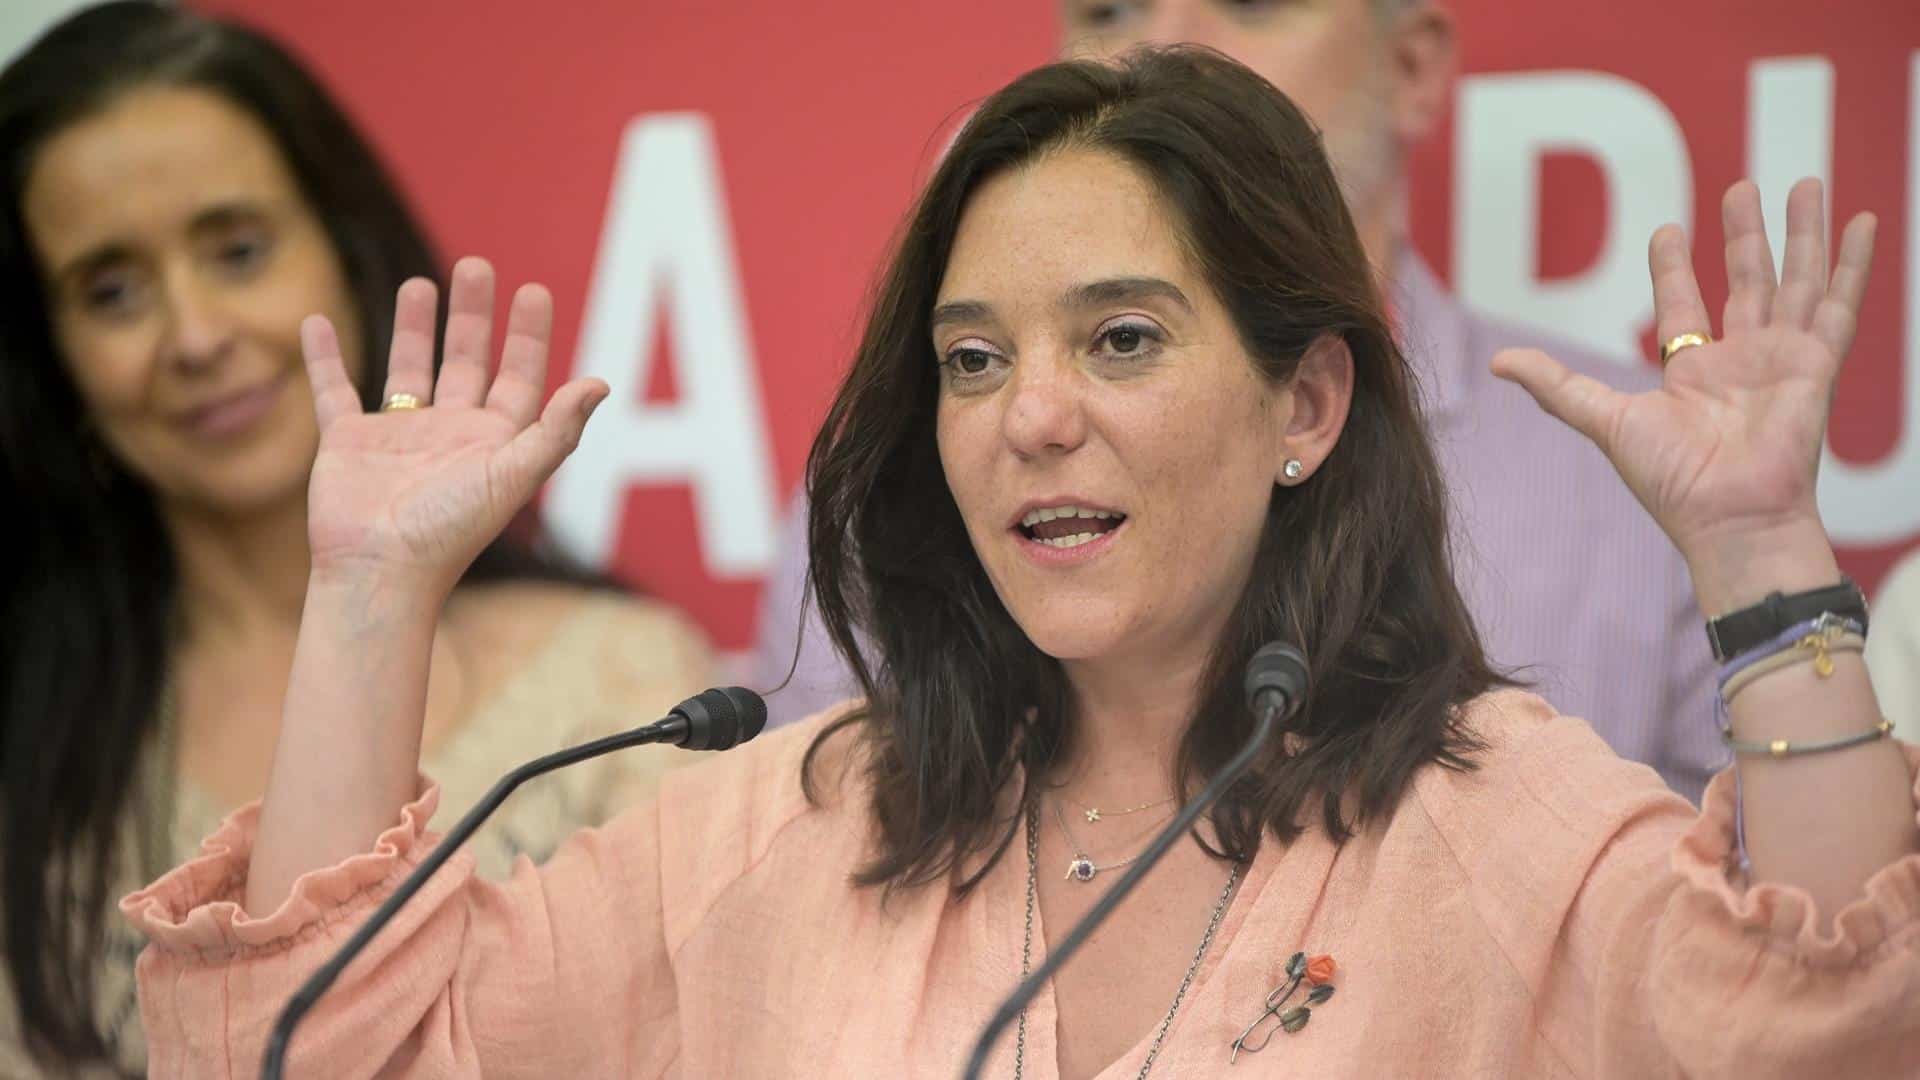 La alcaldesa de A Coruña, la socialista Inés Rey, celebrando los resultados electorales | EP